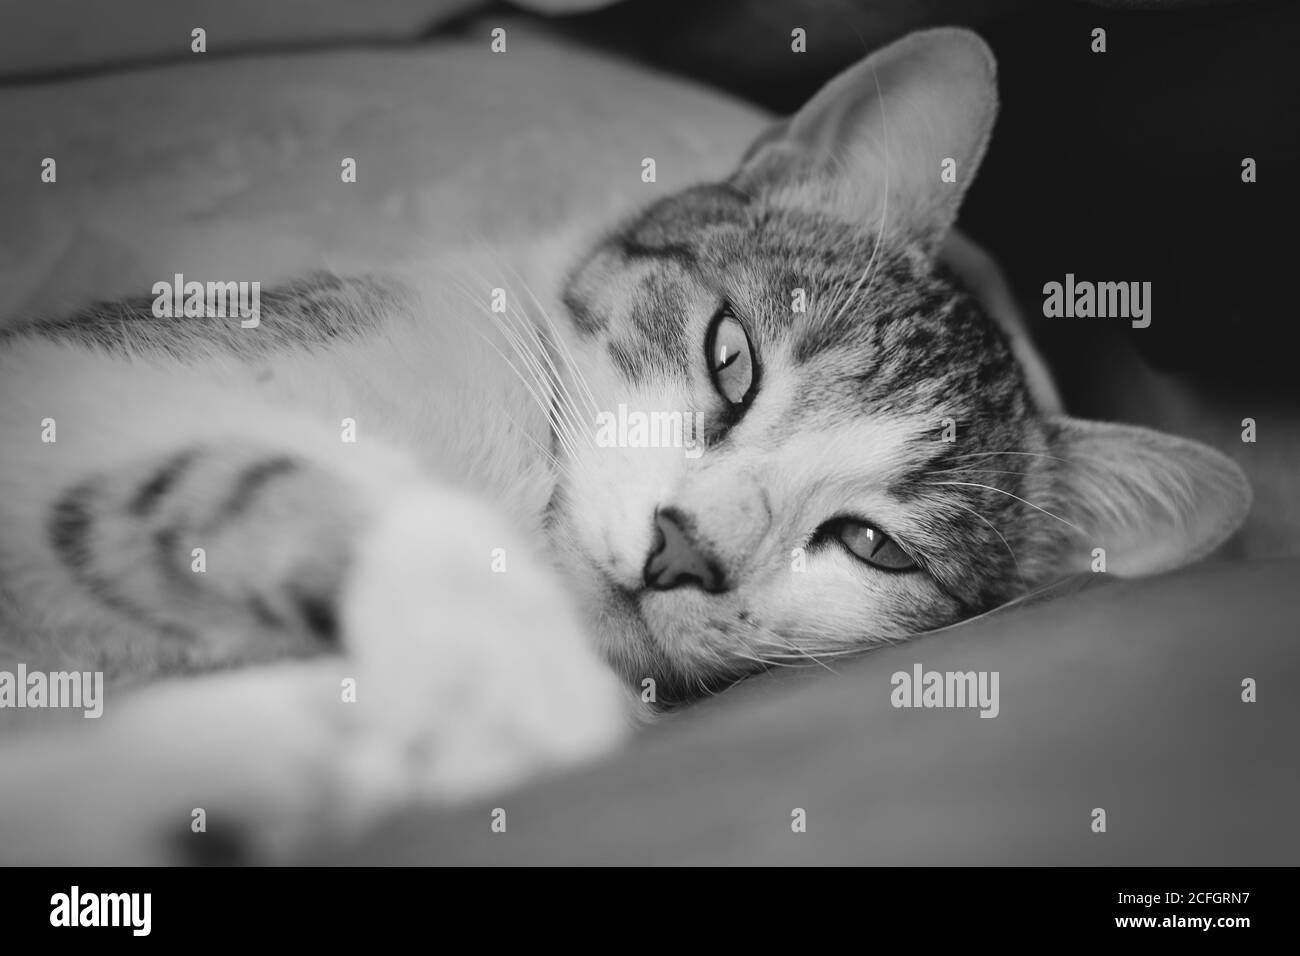 Magnifique chat tabby allongé dans un canapé, regardant directement à la caméra. Image en noir et blanc. Banque D'Images